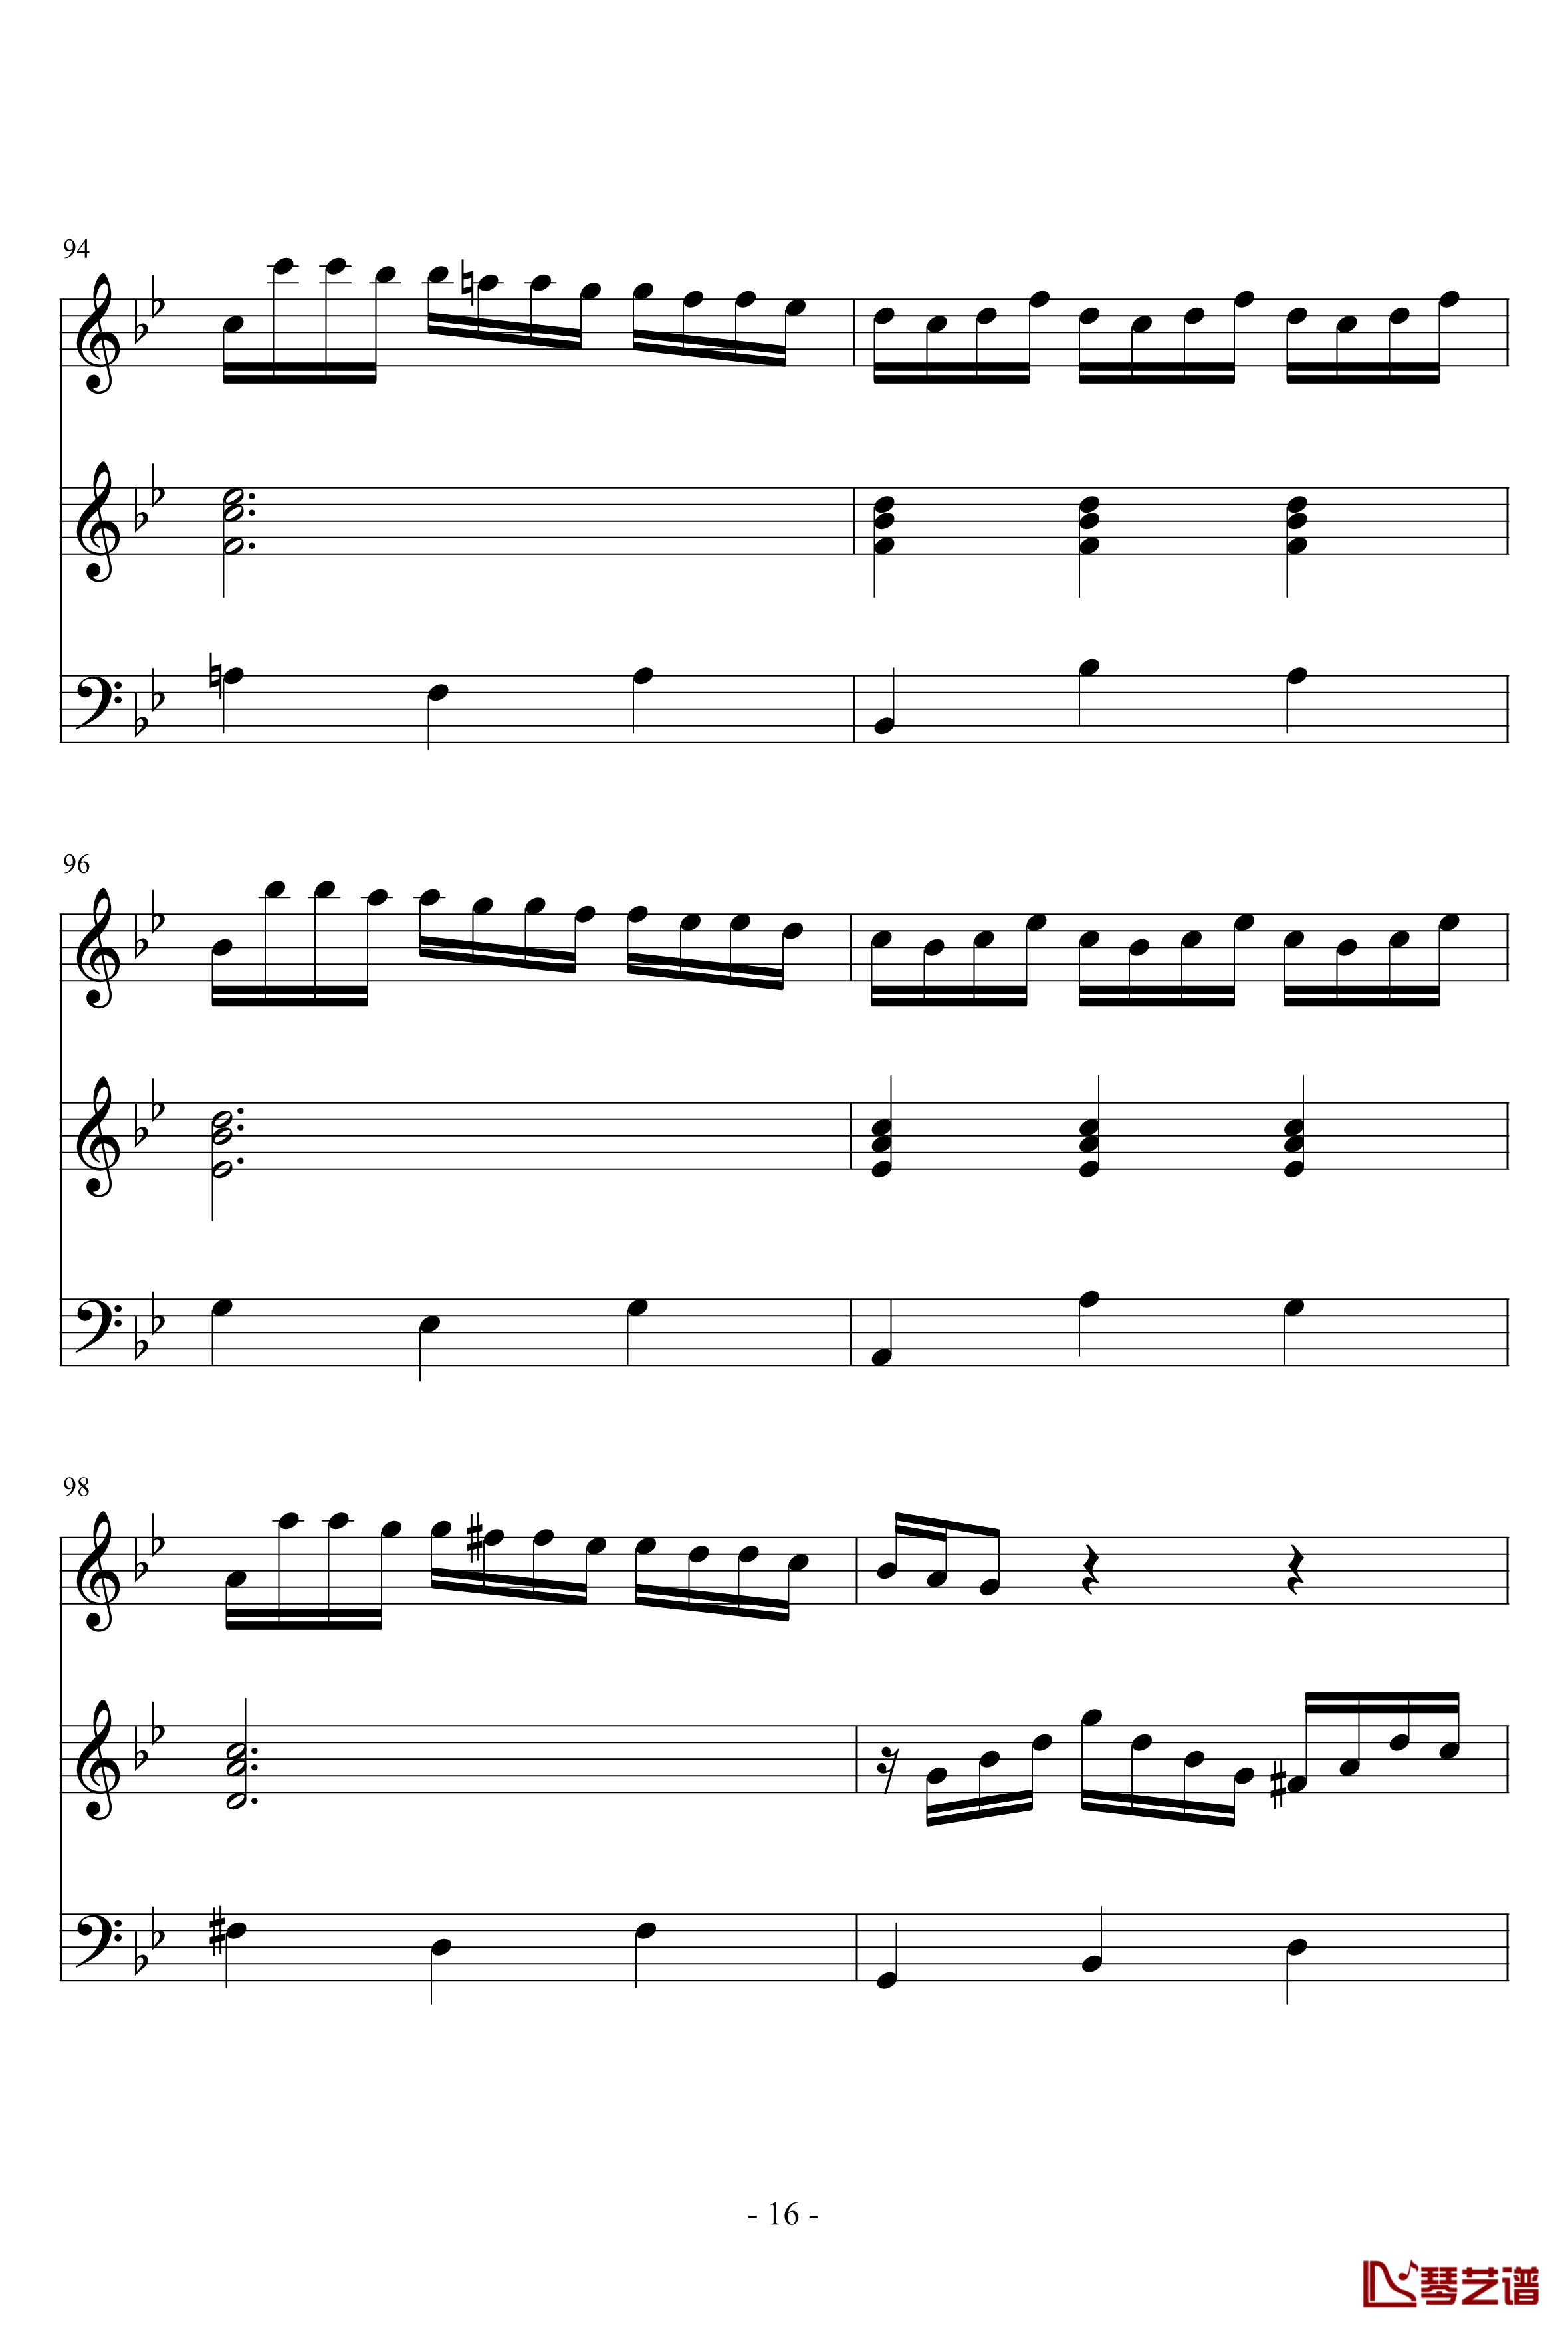 长笛与羽管键琴奏鸣曲第一乐章钢琴谱-巴赫-P.E.Bach16